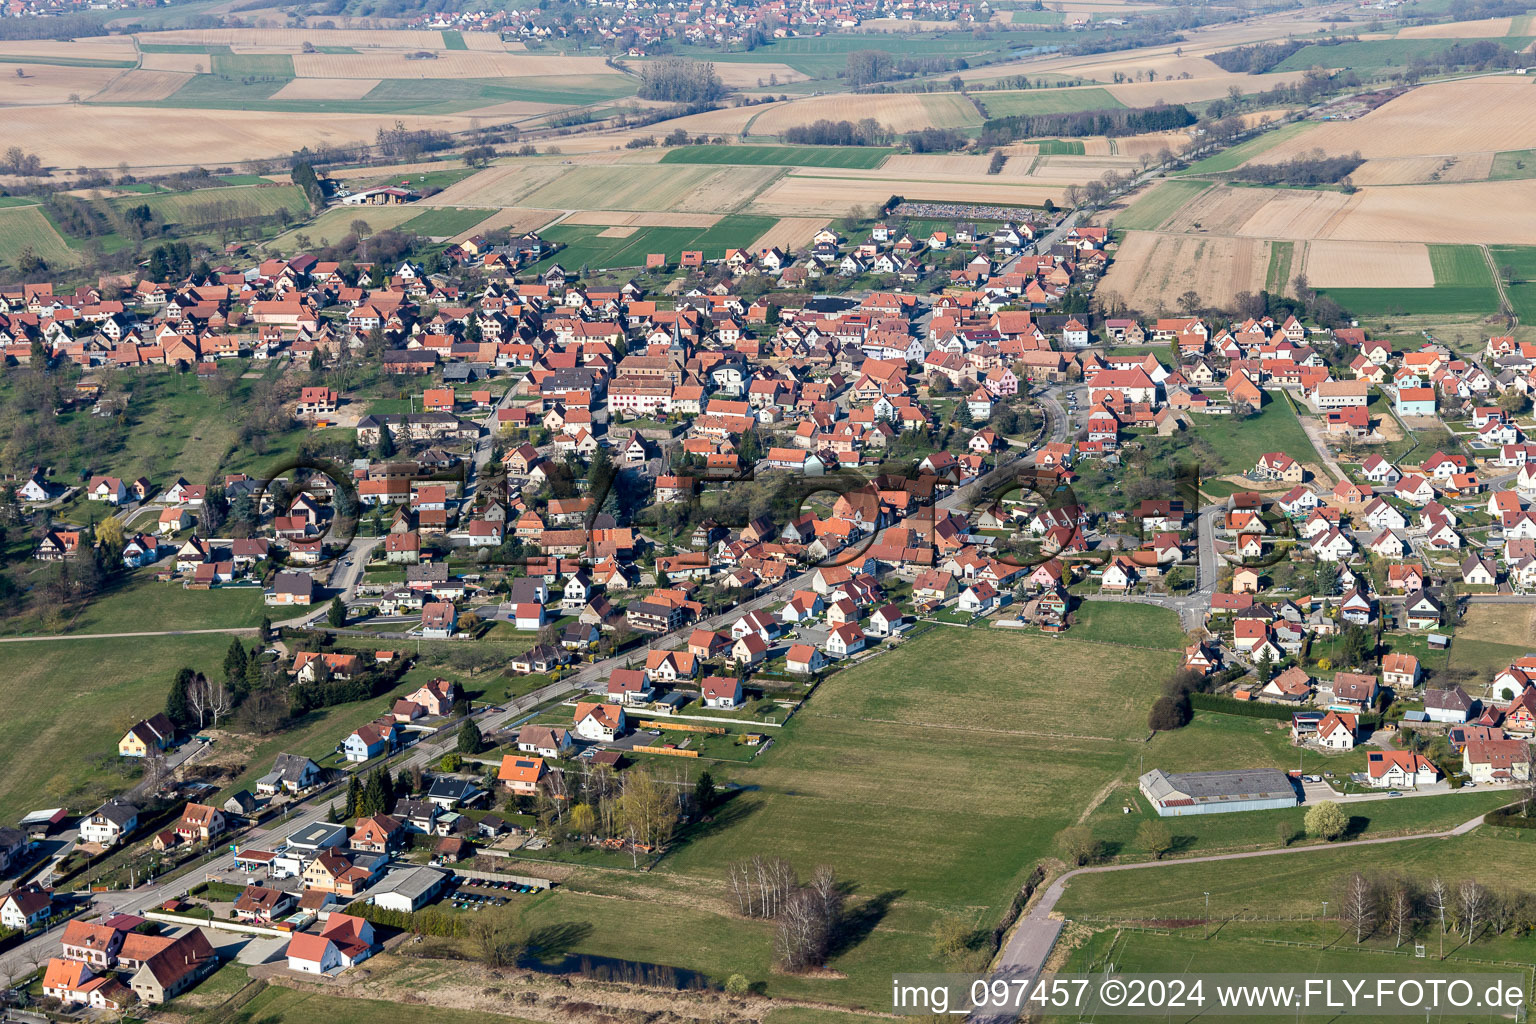 Luftbild von Ortsansicht der Straßen und Häuser der Wohngebiete in Surbourg in Grand Est im Bundesland Bas-Rhin, Frankreich